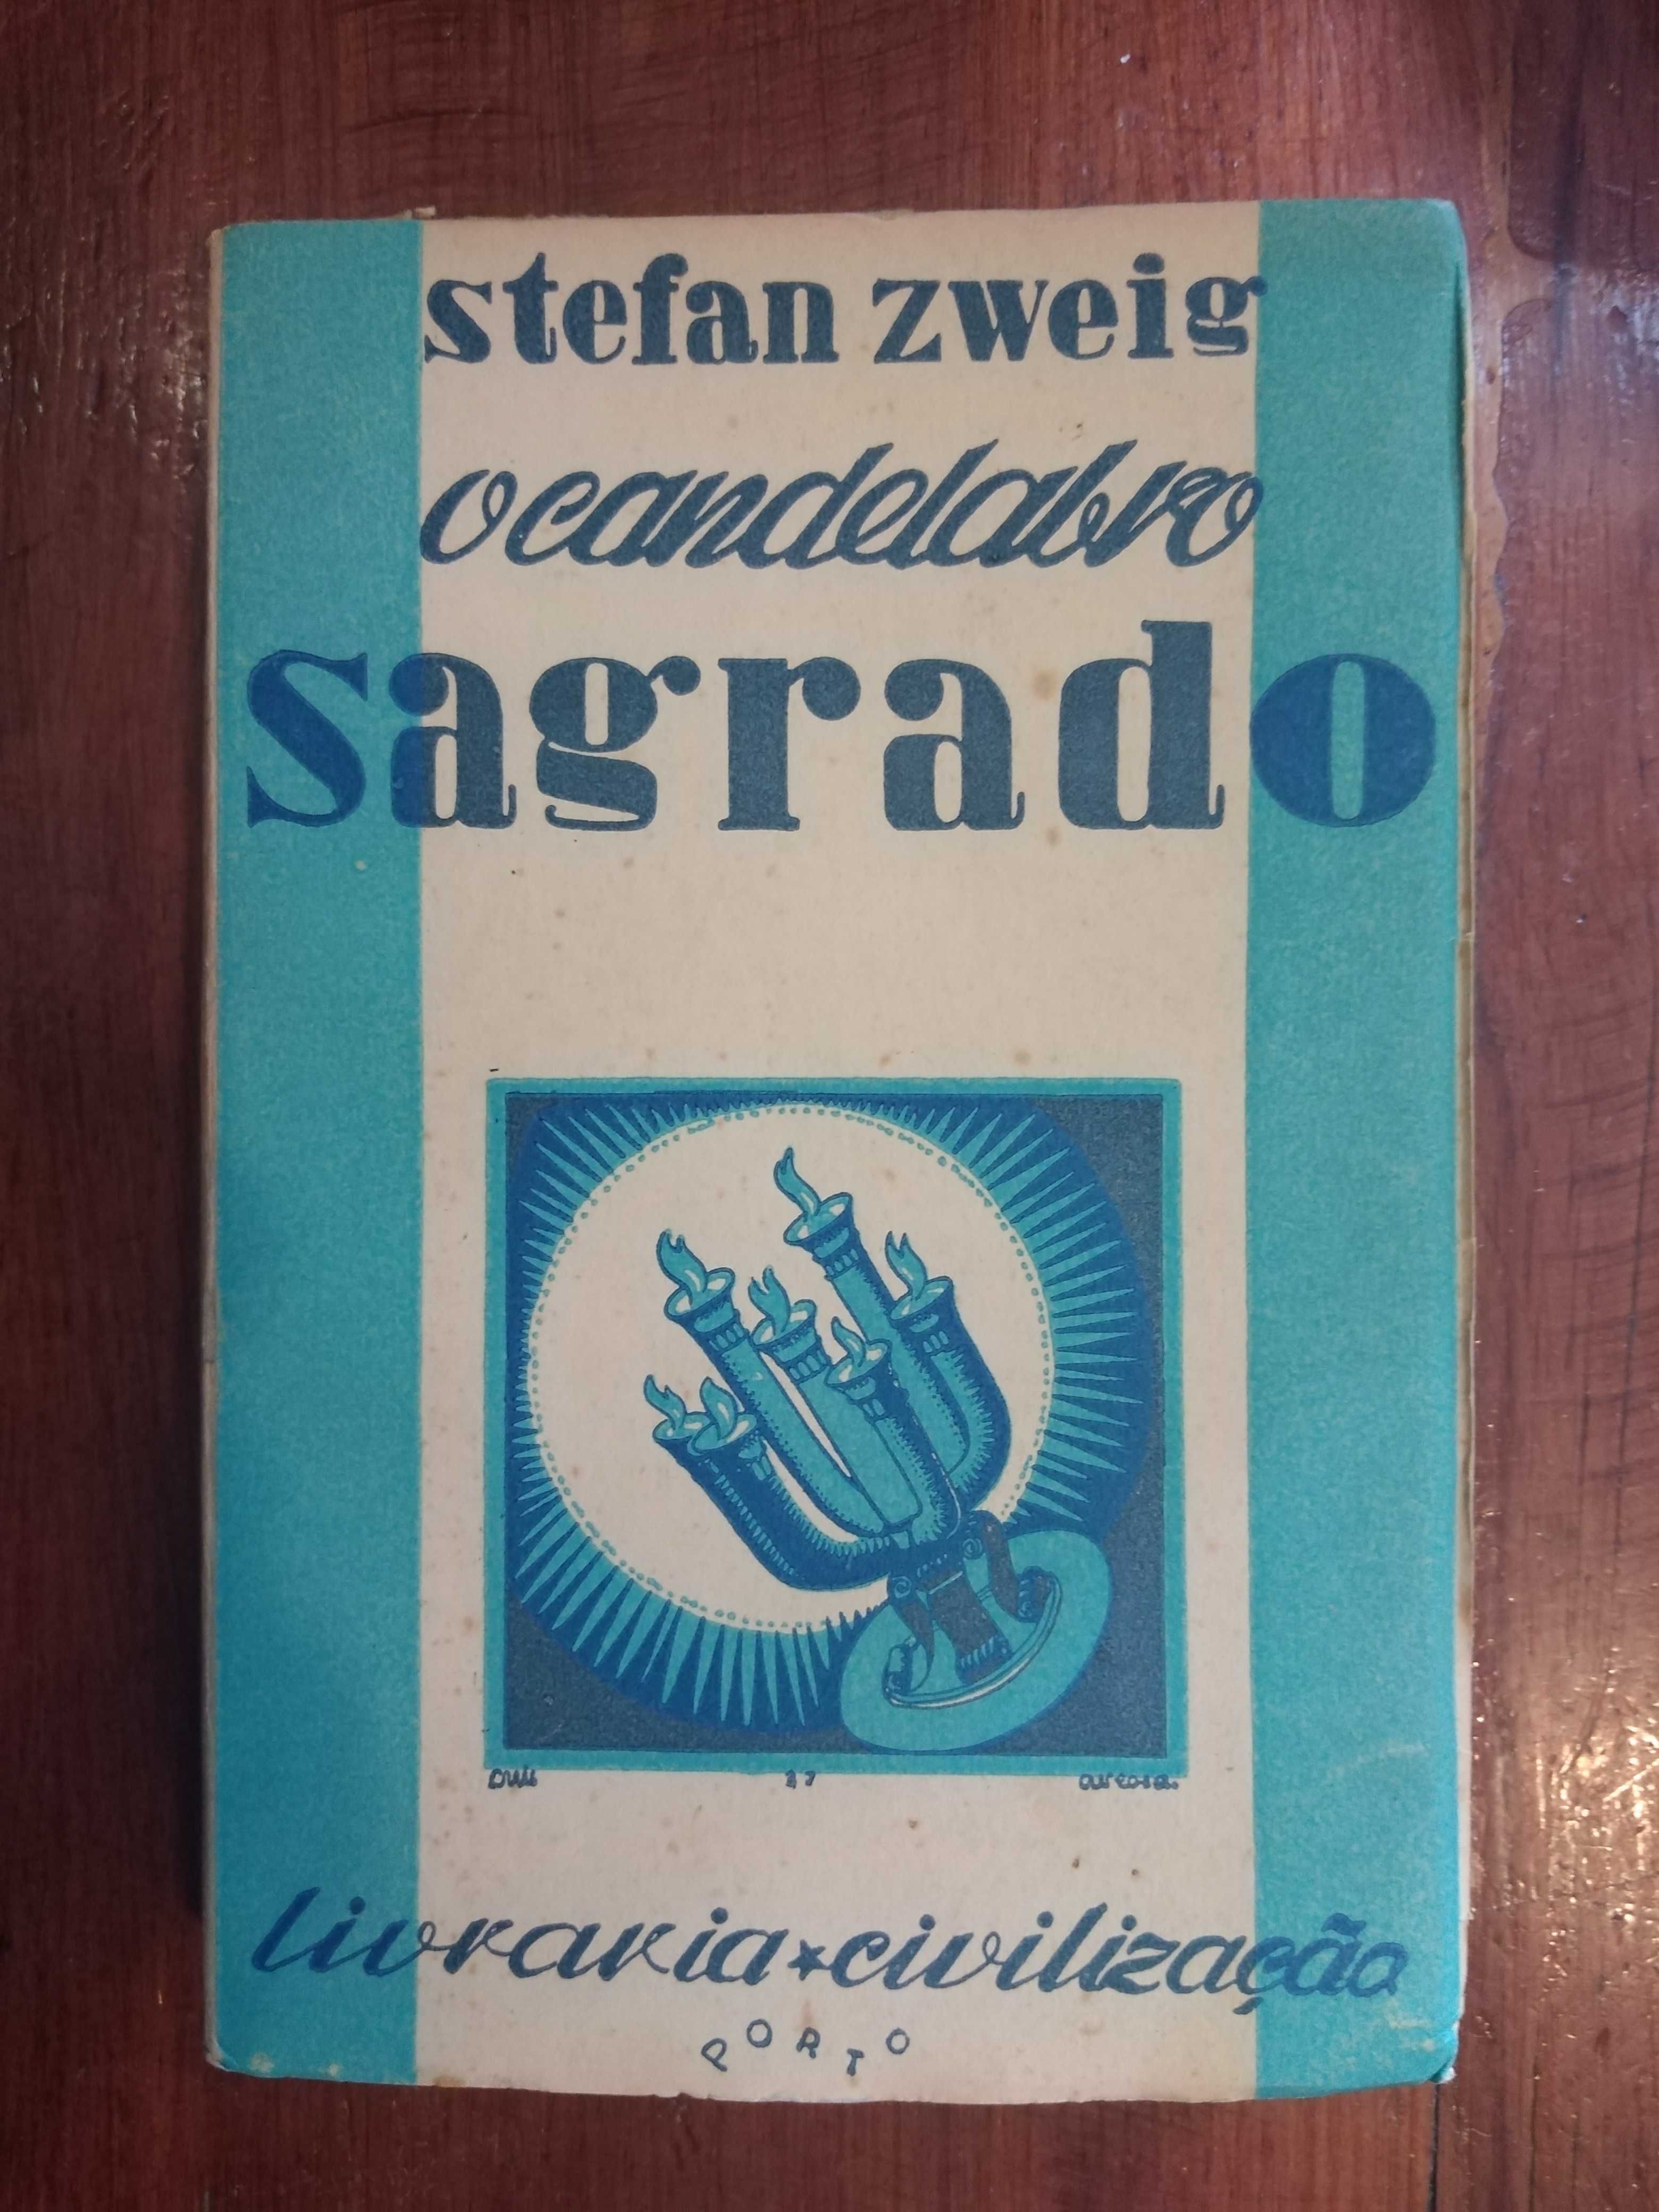 Stefan Zweig - O candelabro sagrado